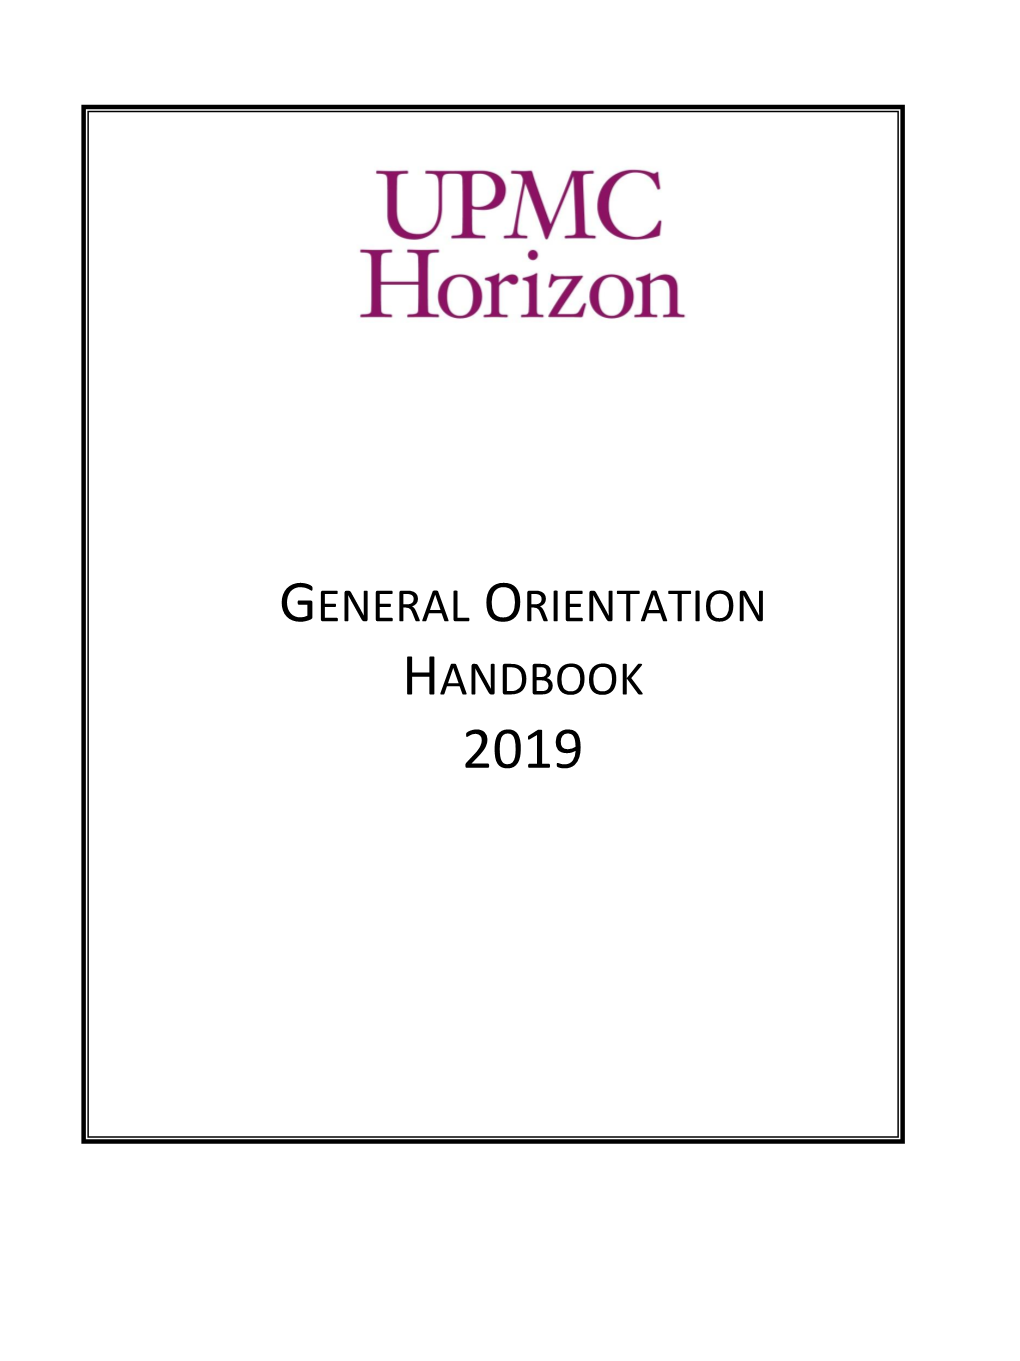 General Orientation Handbook 2019